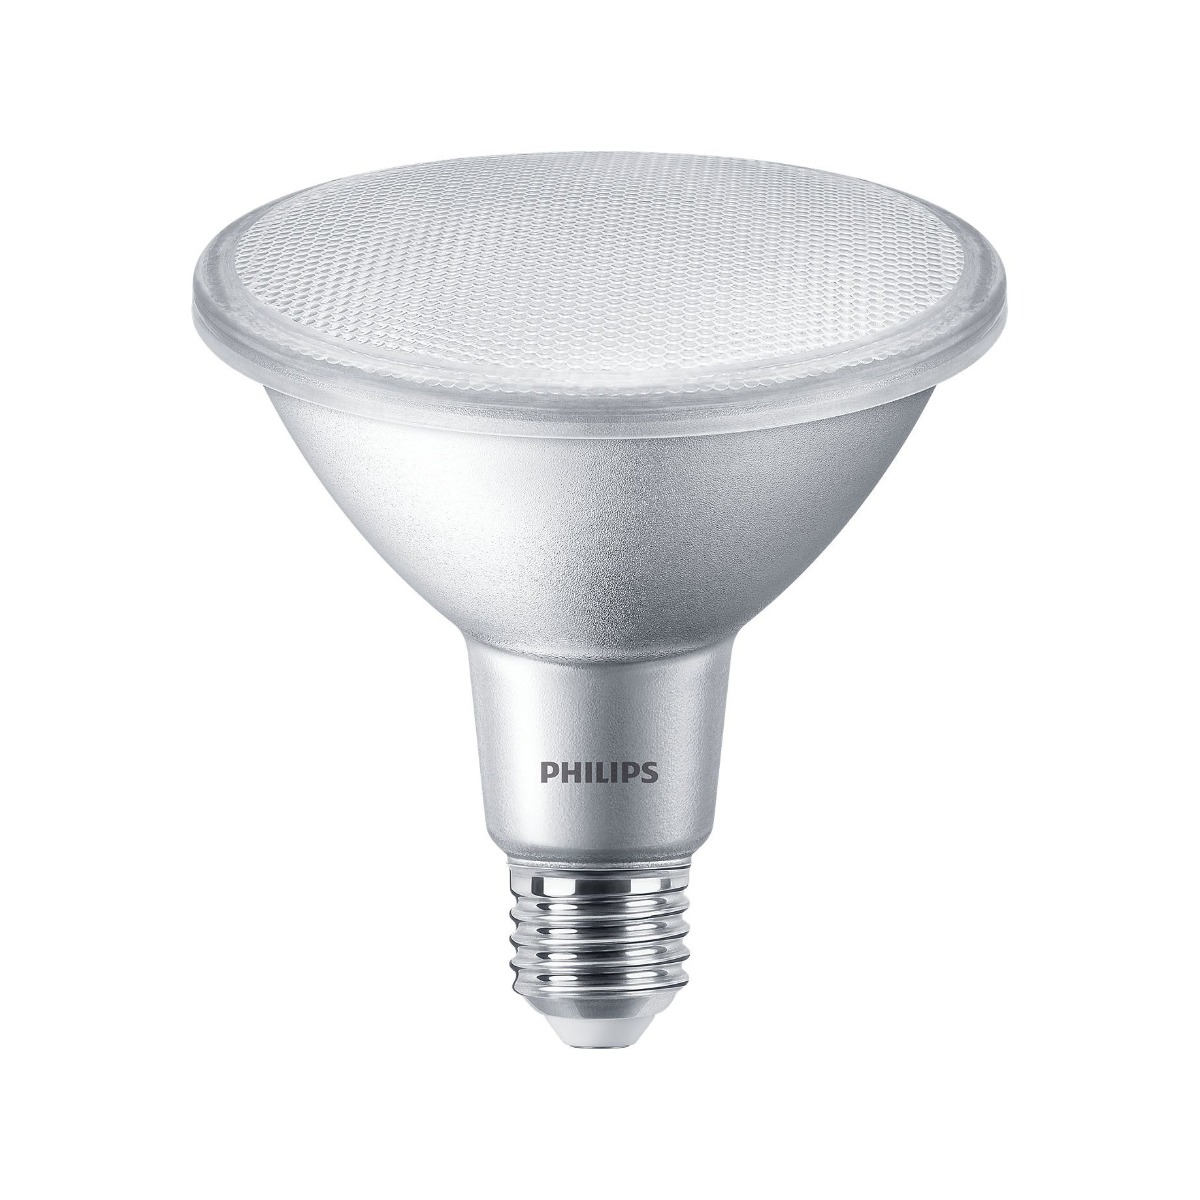 Philips LED Spot PAR38 9-60W E27 927 25° DIM 750lm 2700K